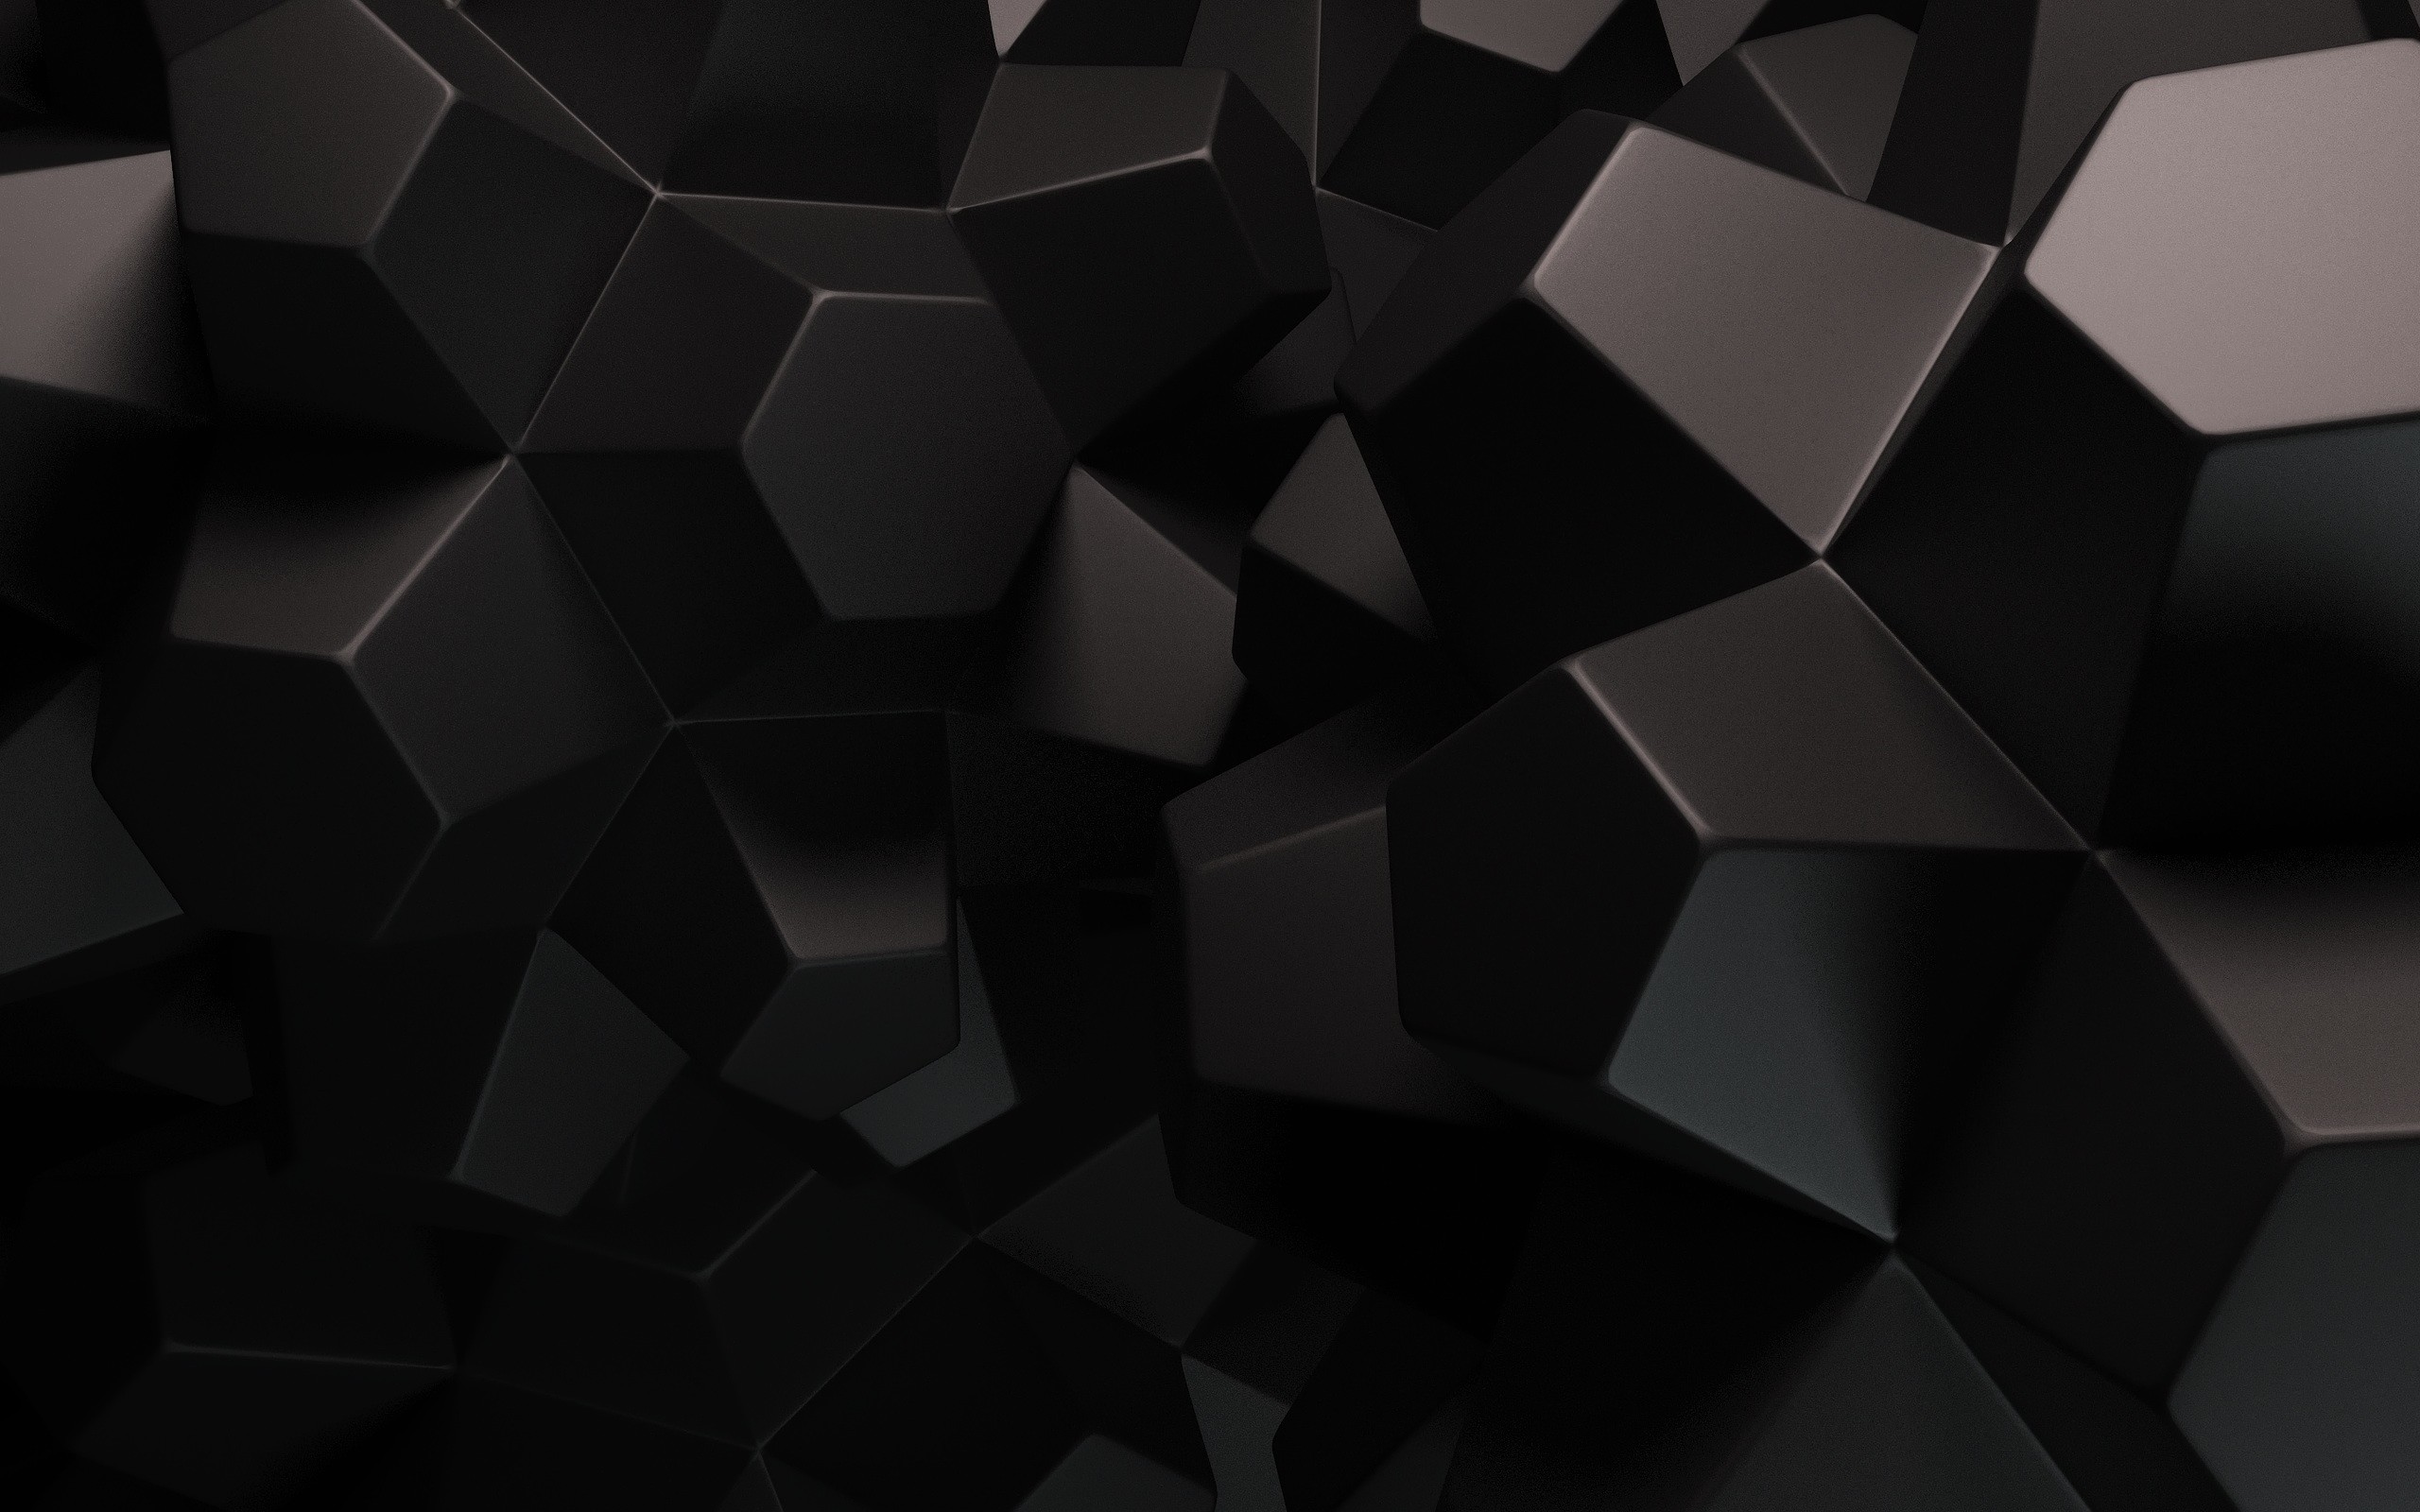 Hình nền đen đơn giản là sự lựa chọn hoàn hảo cho những ai yêu thích sự thanh lịch và tối giản. Một nền đen đơn giản không chỉ mang đến sự tinh tế mà còn khiến cho chiếc máy tính của bạn trở nên đặc biệt hơn. Nhấp vào hình ảnh để cảm nhận sự thay đổi mà hình nền đen đơn giản đem lại.